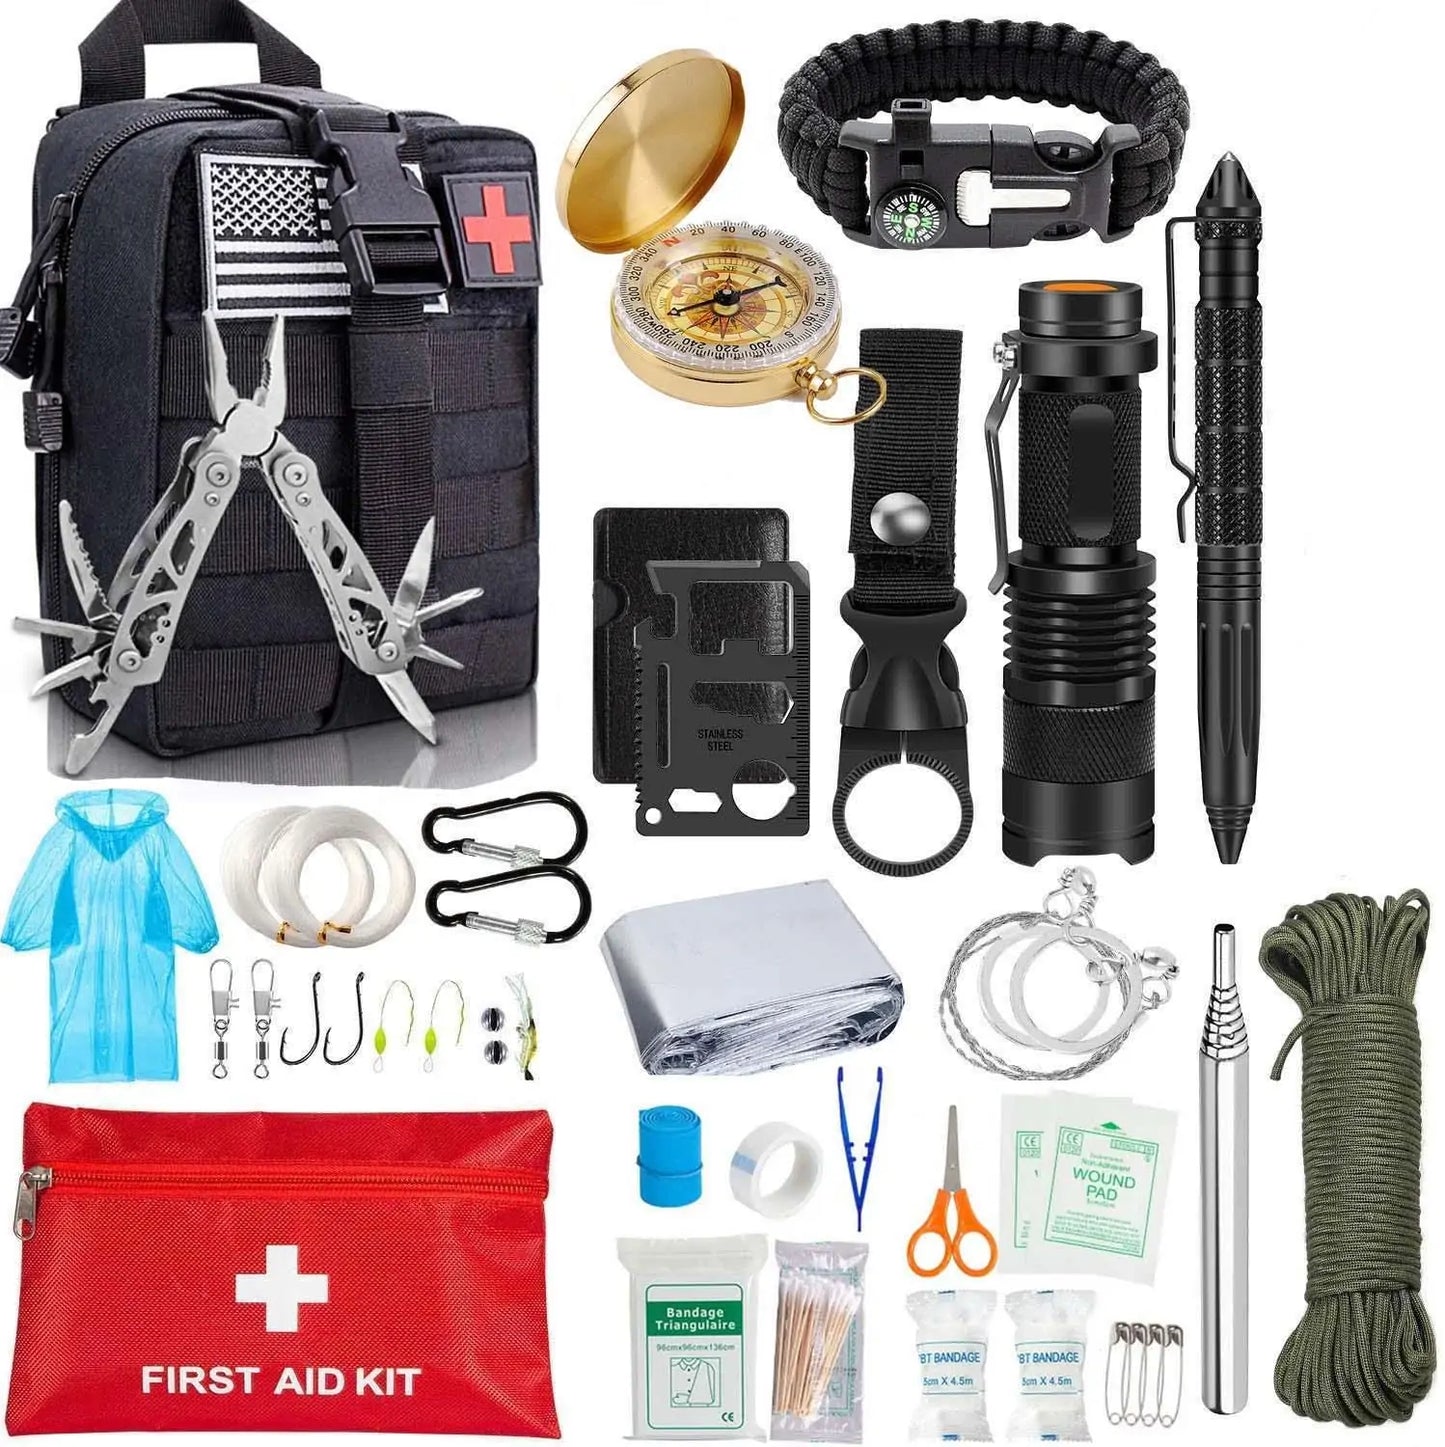 EDC Survival Gear Tool Kit 47 IN 1 Emergency SOS Survival Tools